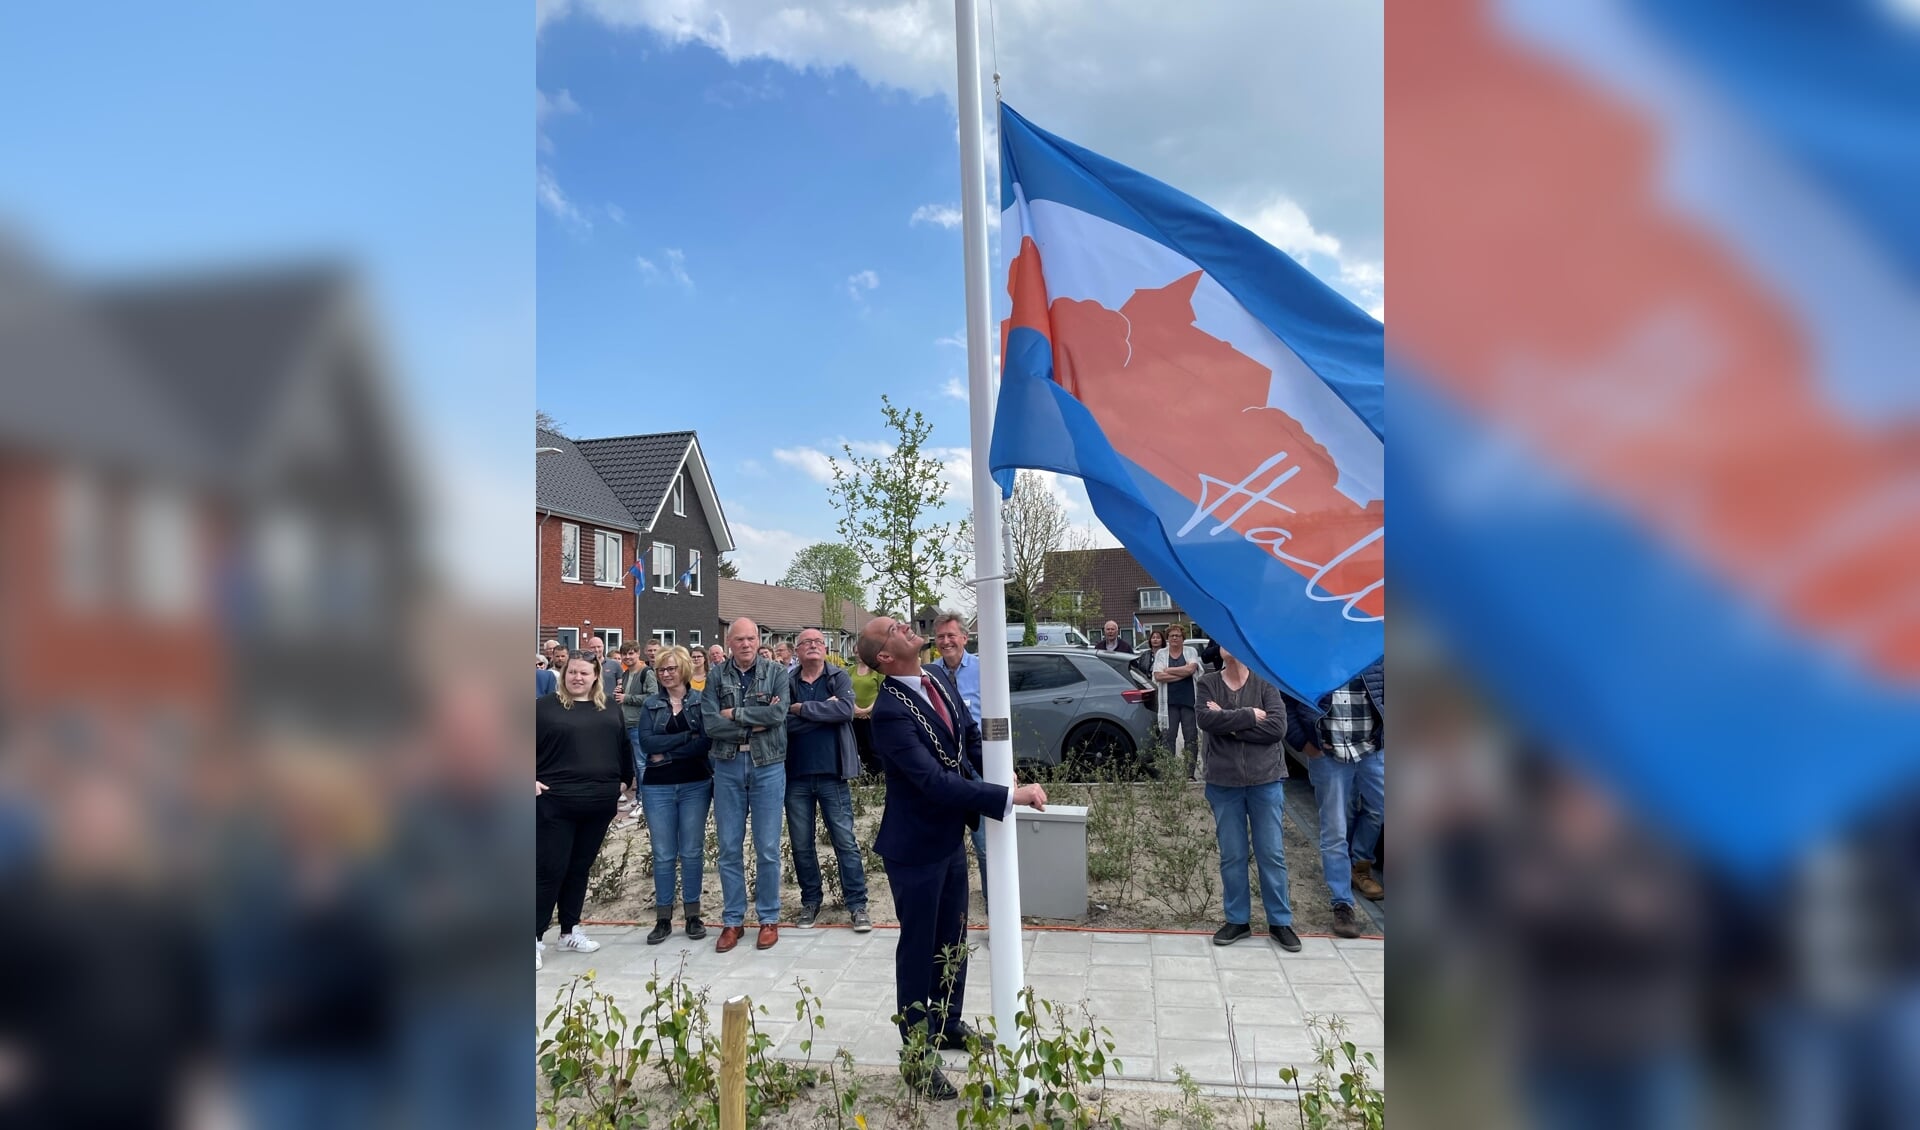 De Hallse vlag wordt gehesen bij de officiële opening van de nieuwbouwwijk. Foto: Peter Leunissen